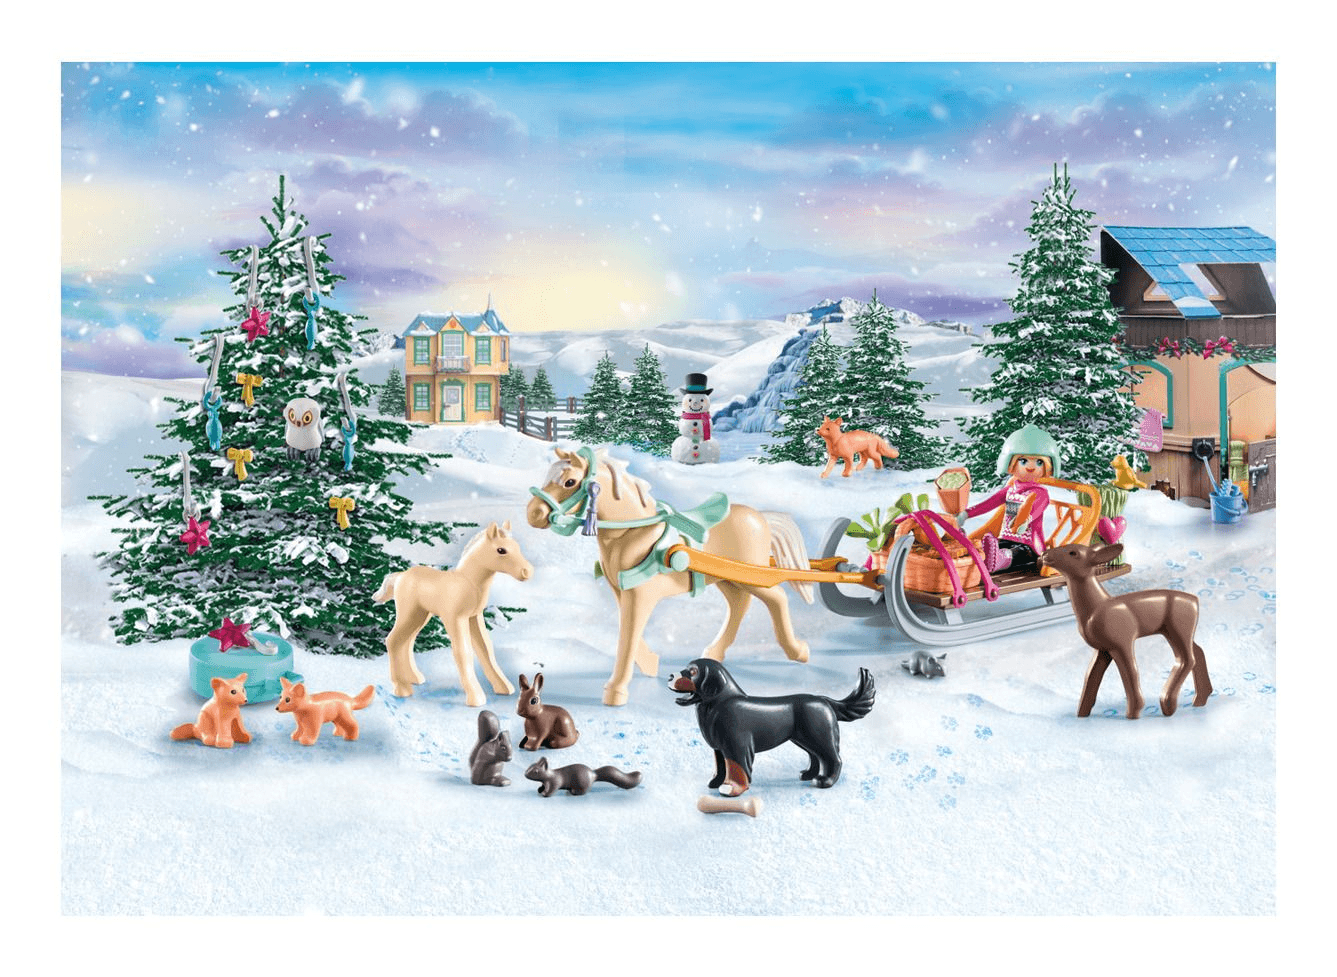 Playmobil - Christmas Sleigh Ride - Advent Calendar - The Card Vault